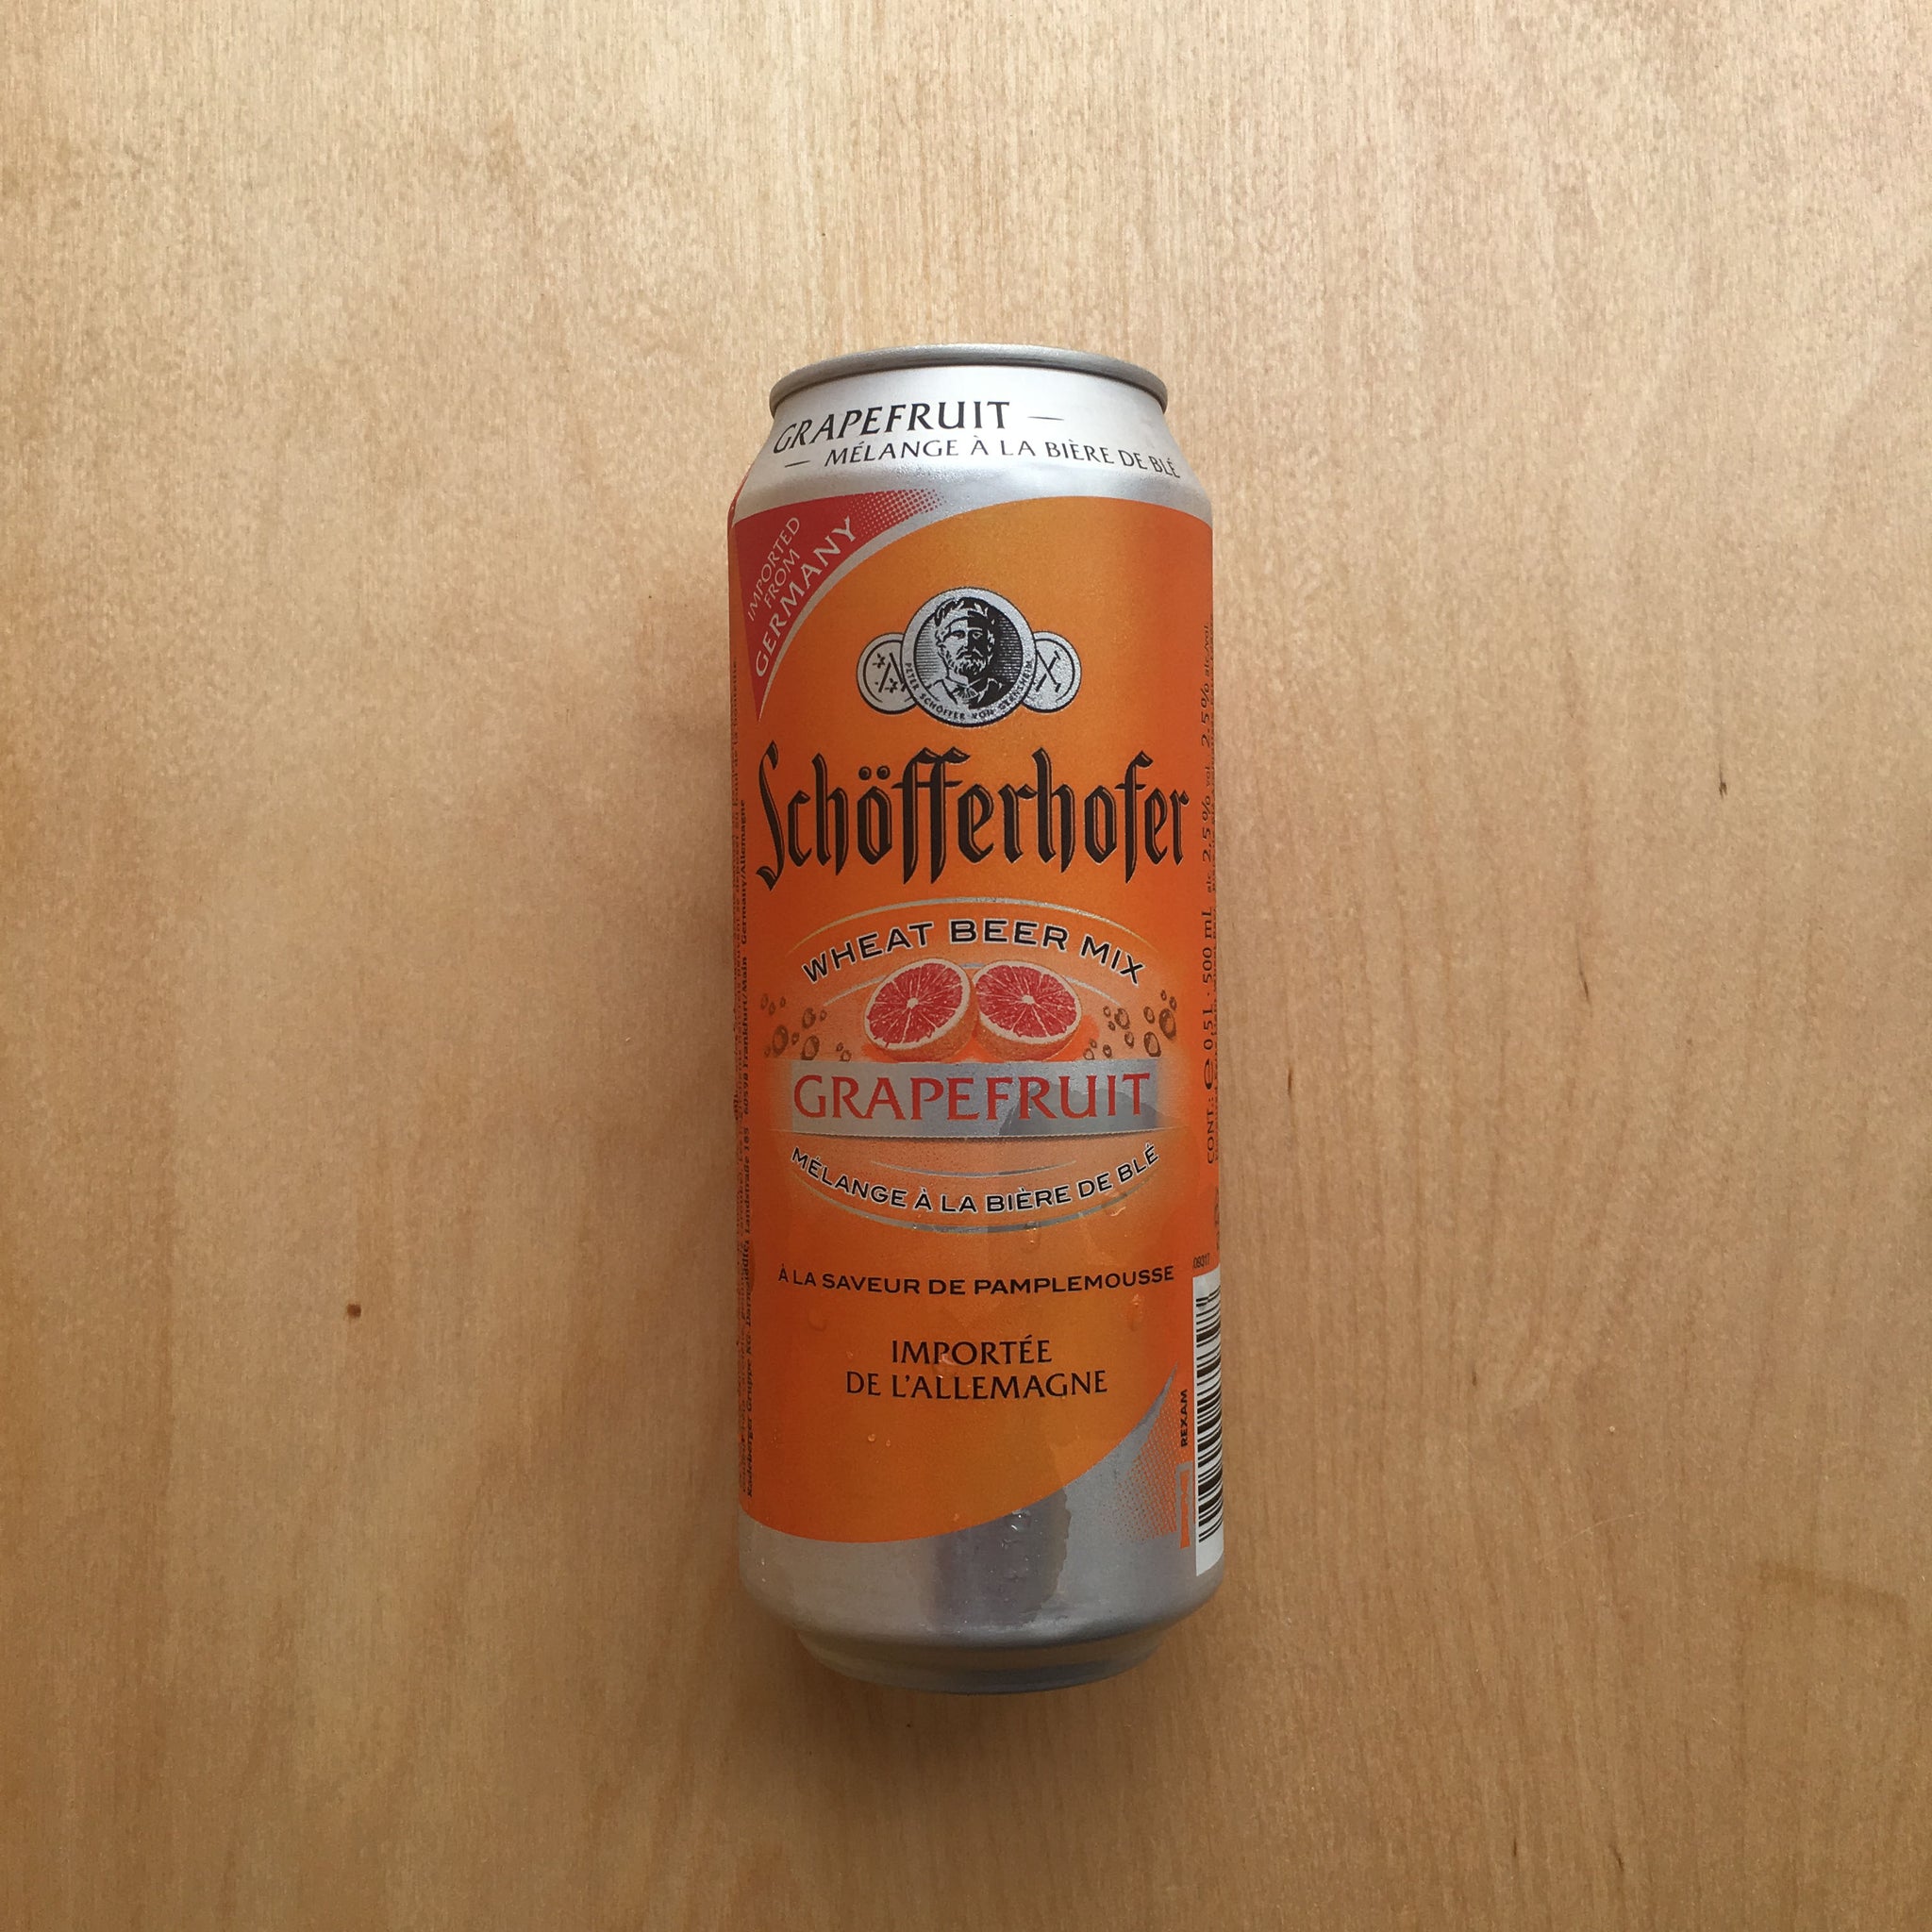 Schofferhofer - Grapefruit 2.5% (500ml)